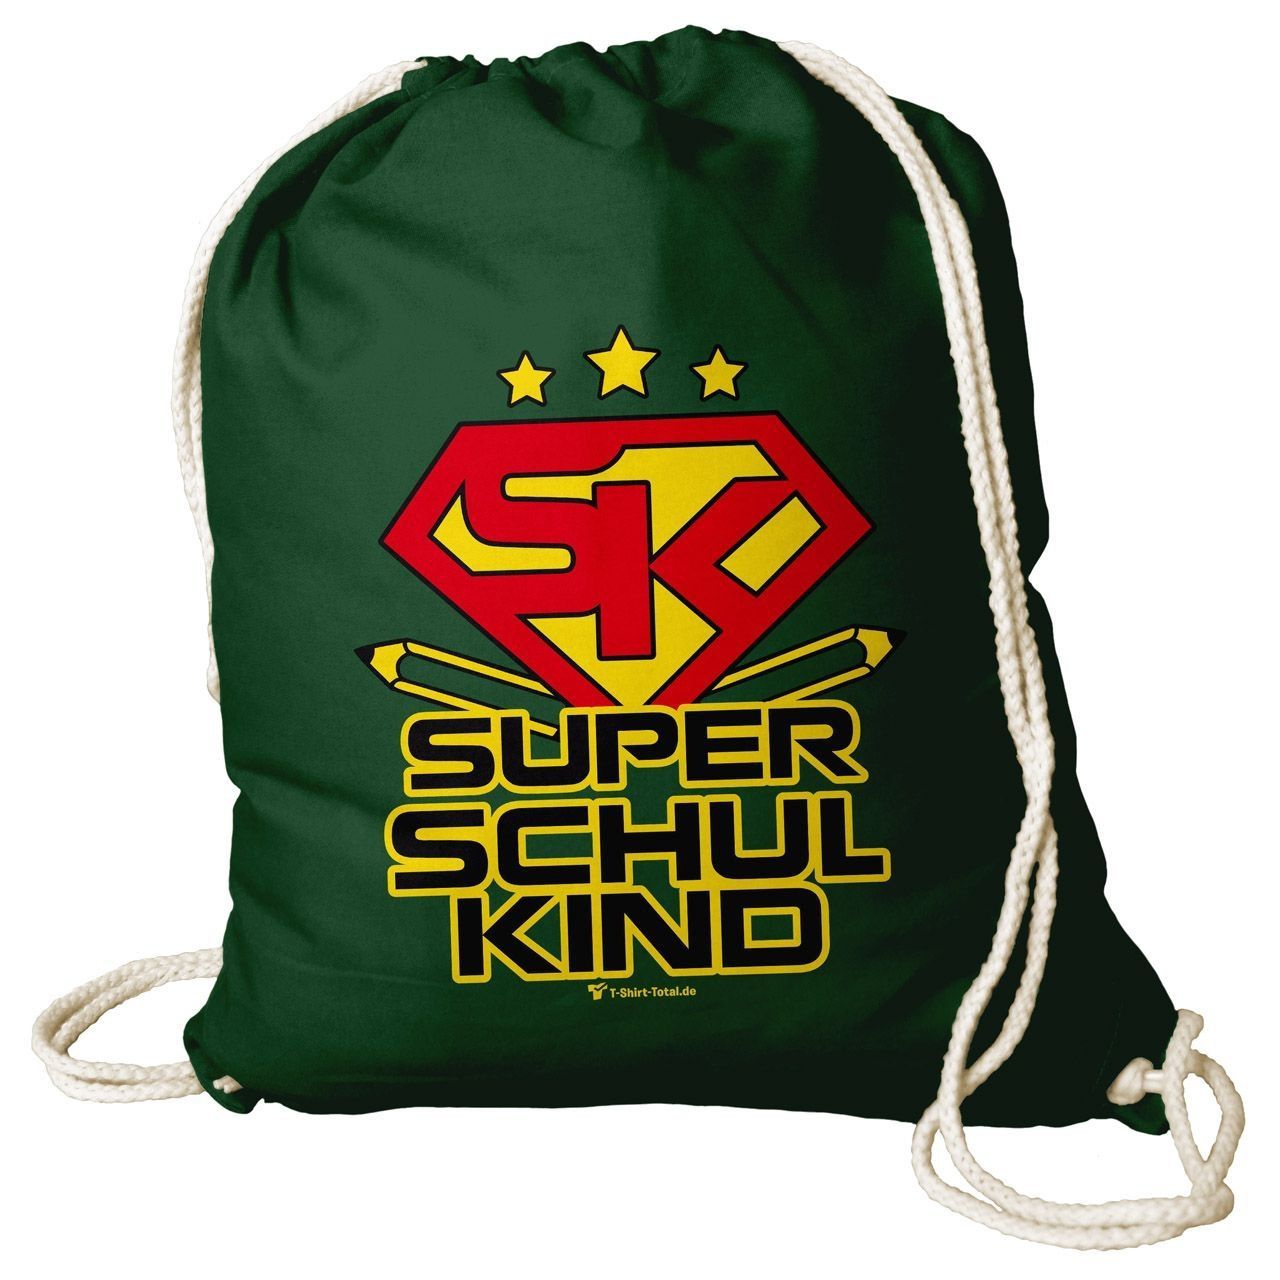 Super Schulkind Rucksack Beutel dunkelgrün